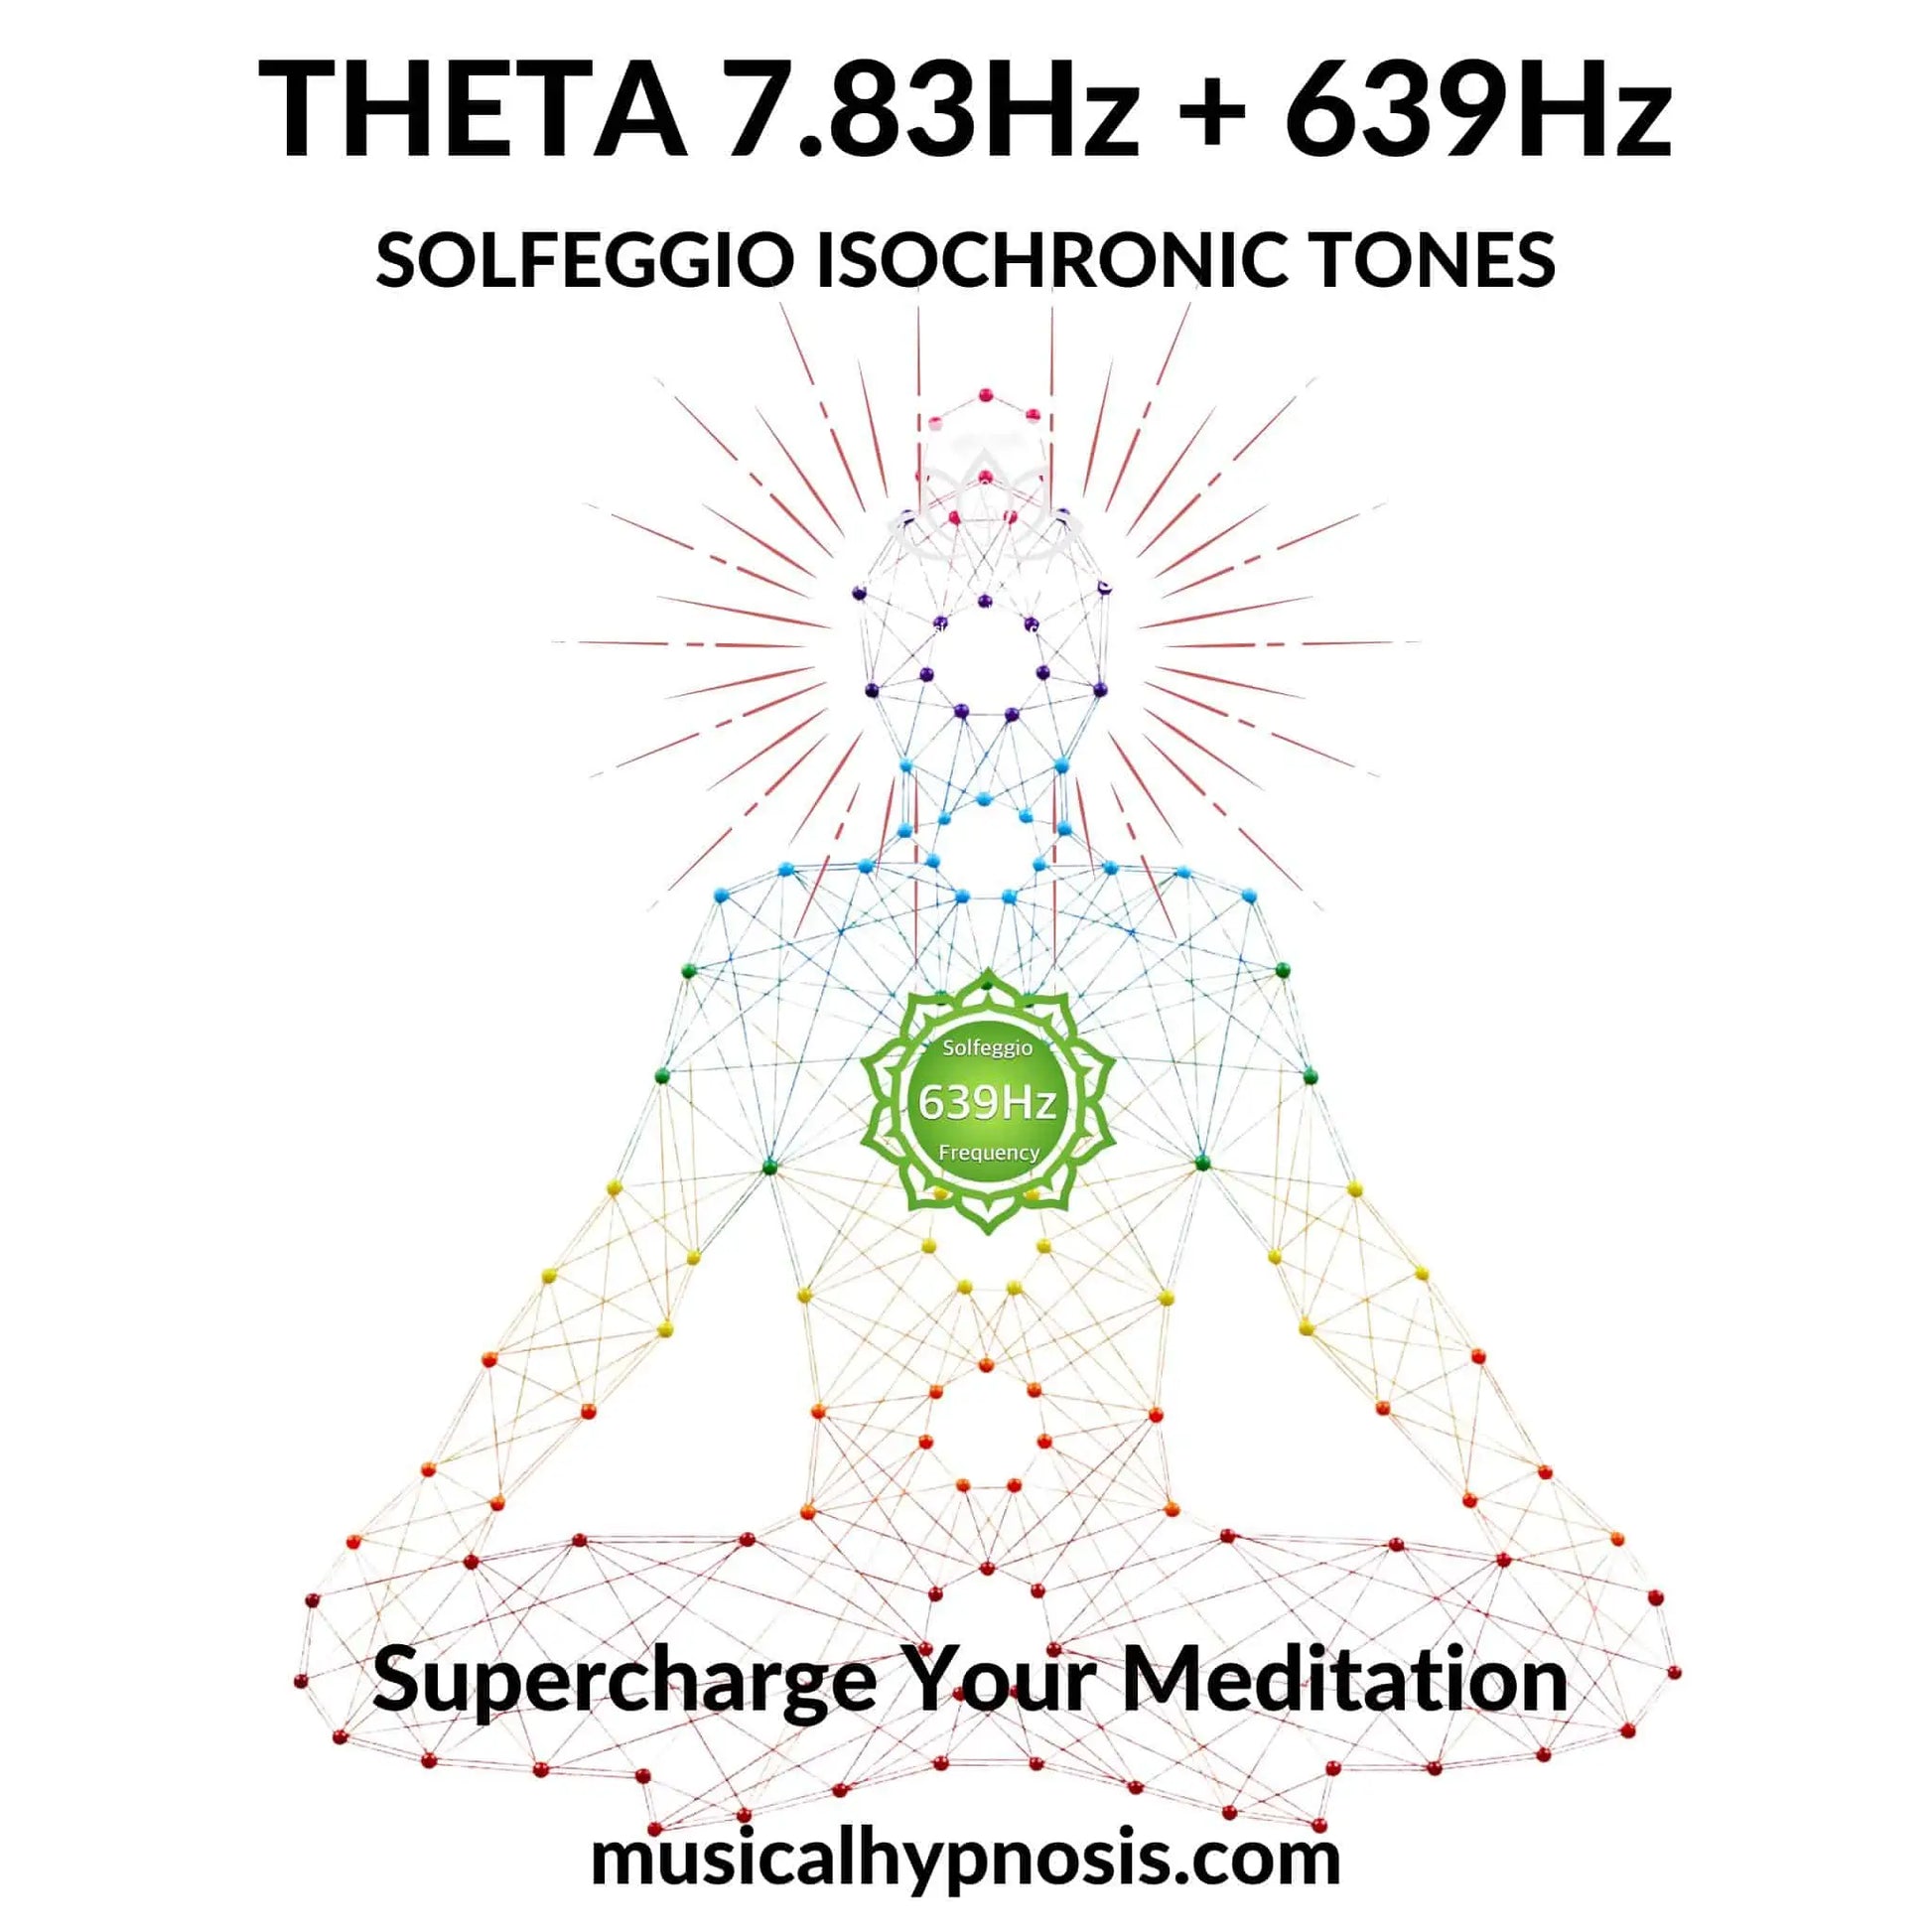 Theta 7.83Hz and 639Hz Solfeggio Isochronic Tones | 30 minutes